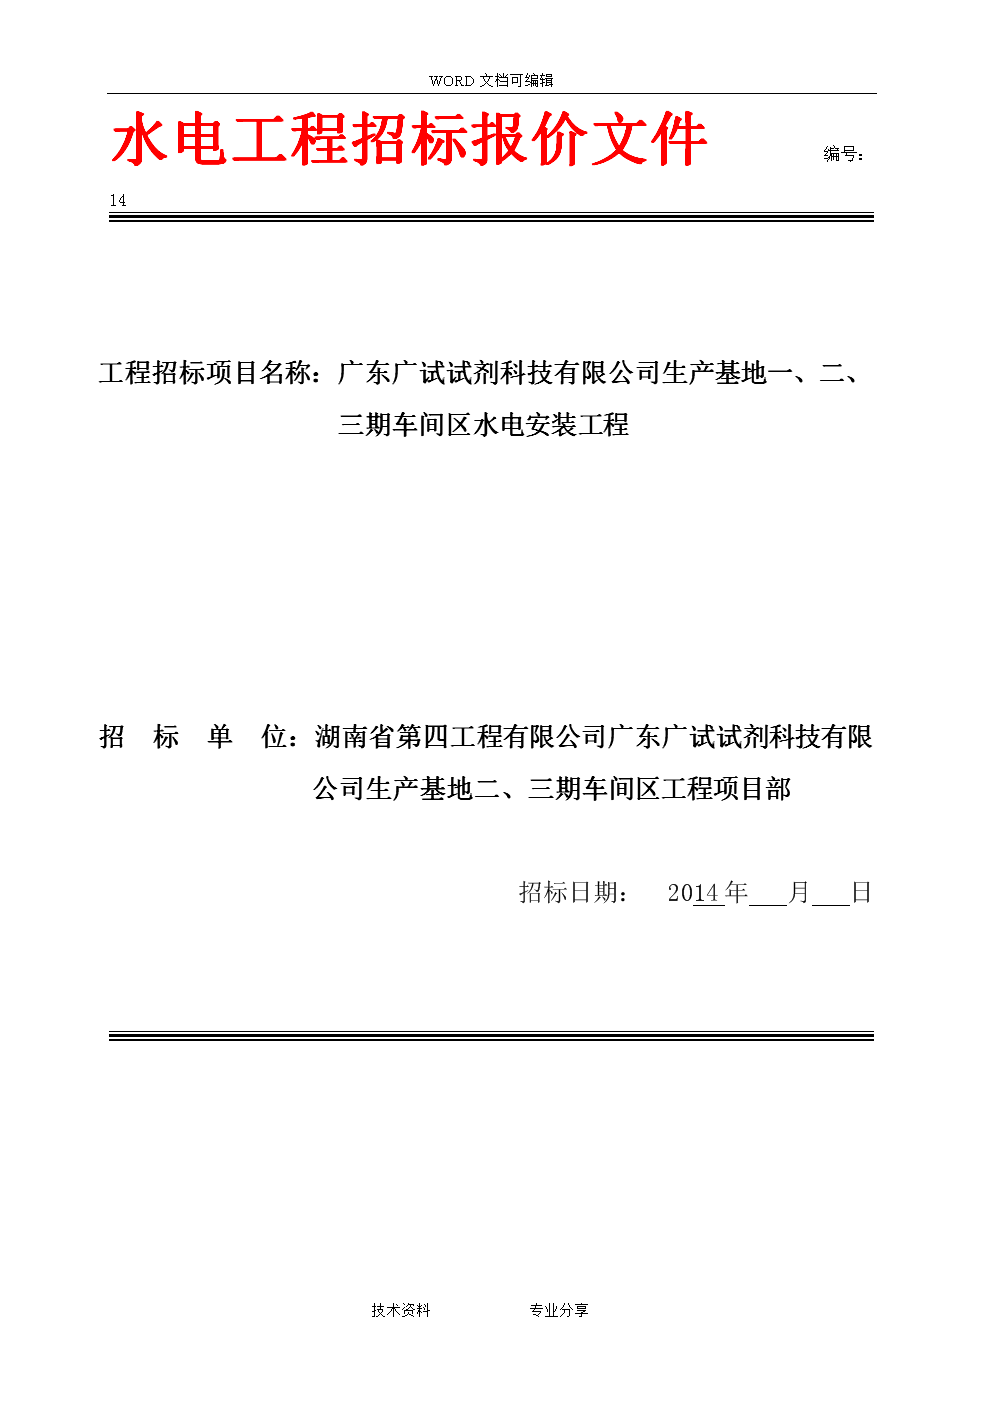 重庆江口水电有限责任公司水情自动测报系统维护管理技术服务招标公告